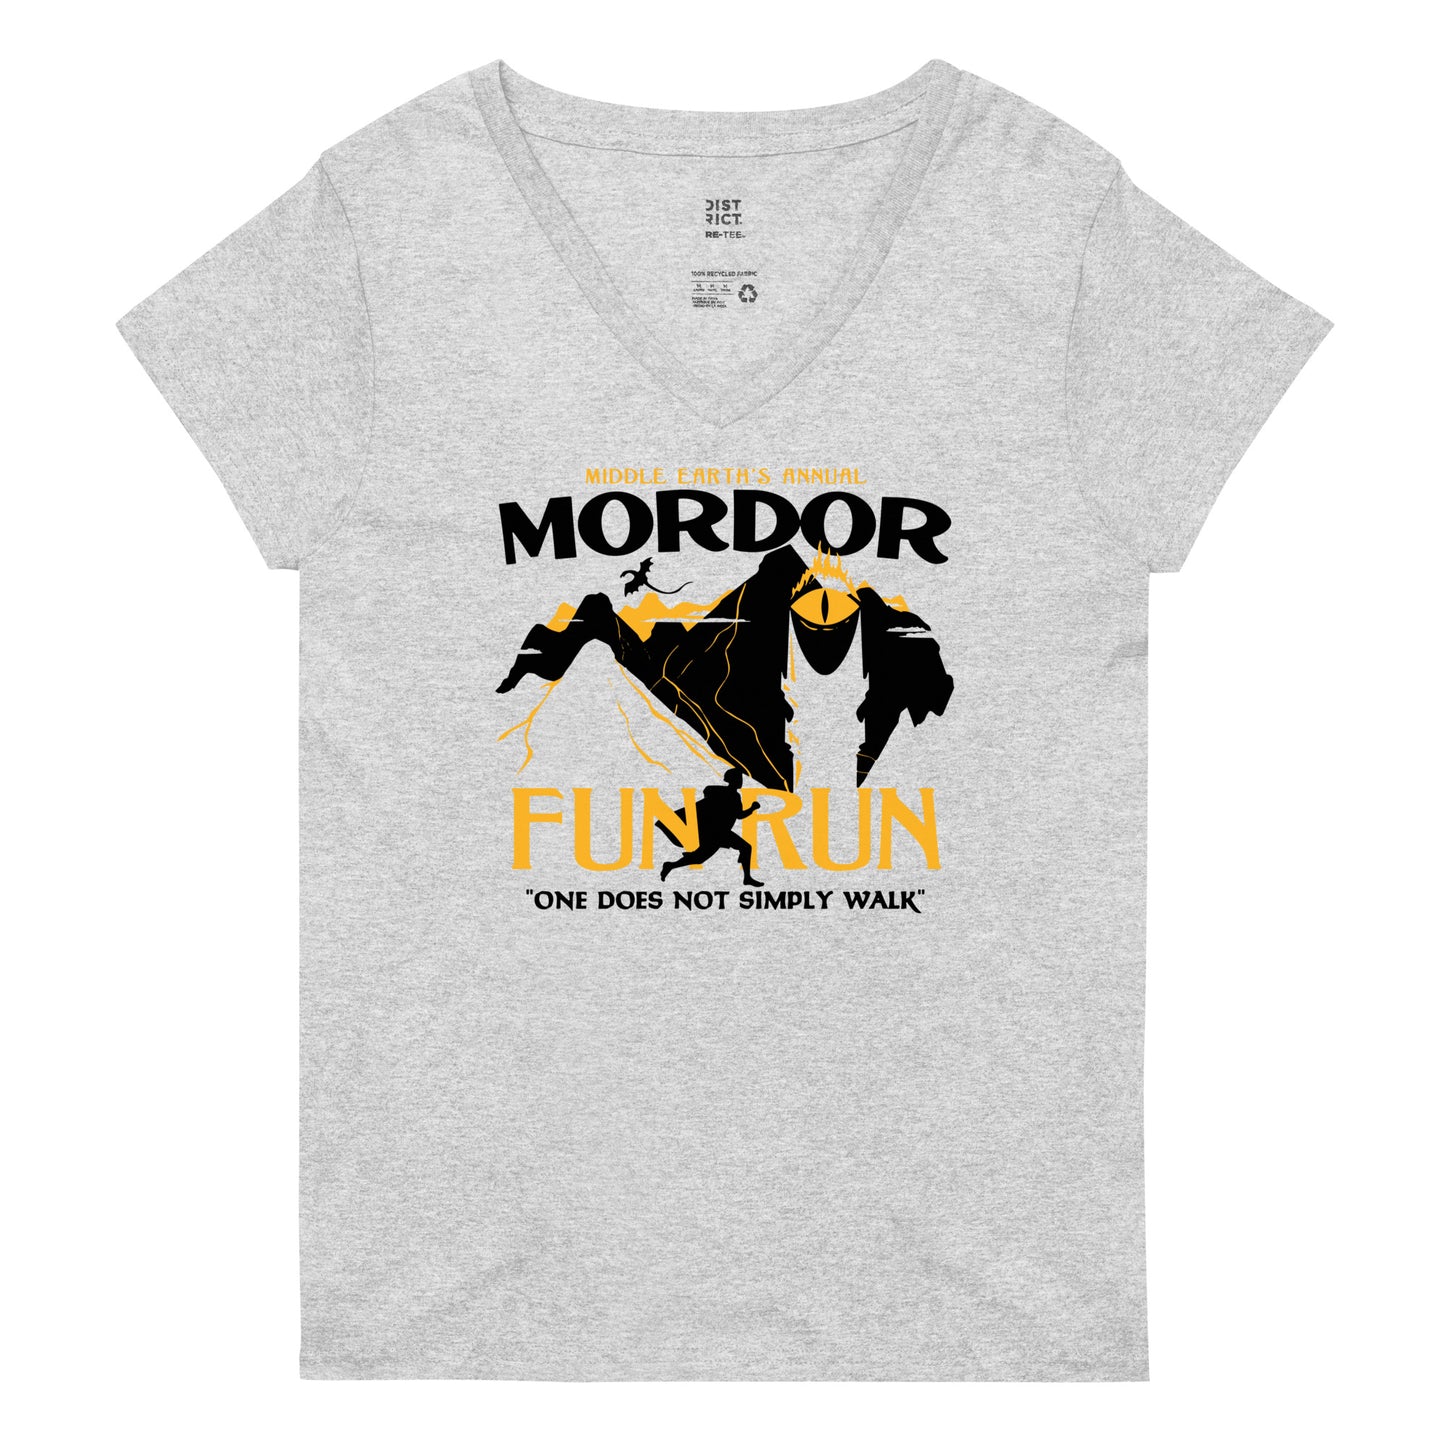 Mordor Fun Run Women's V-Neck Tee